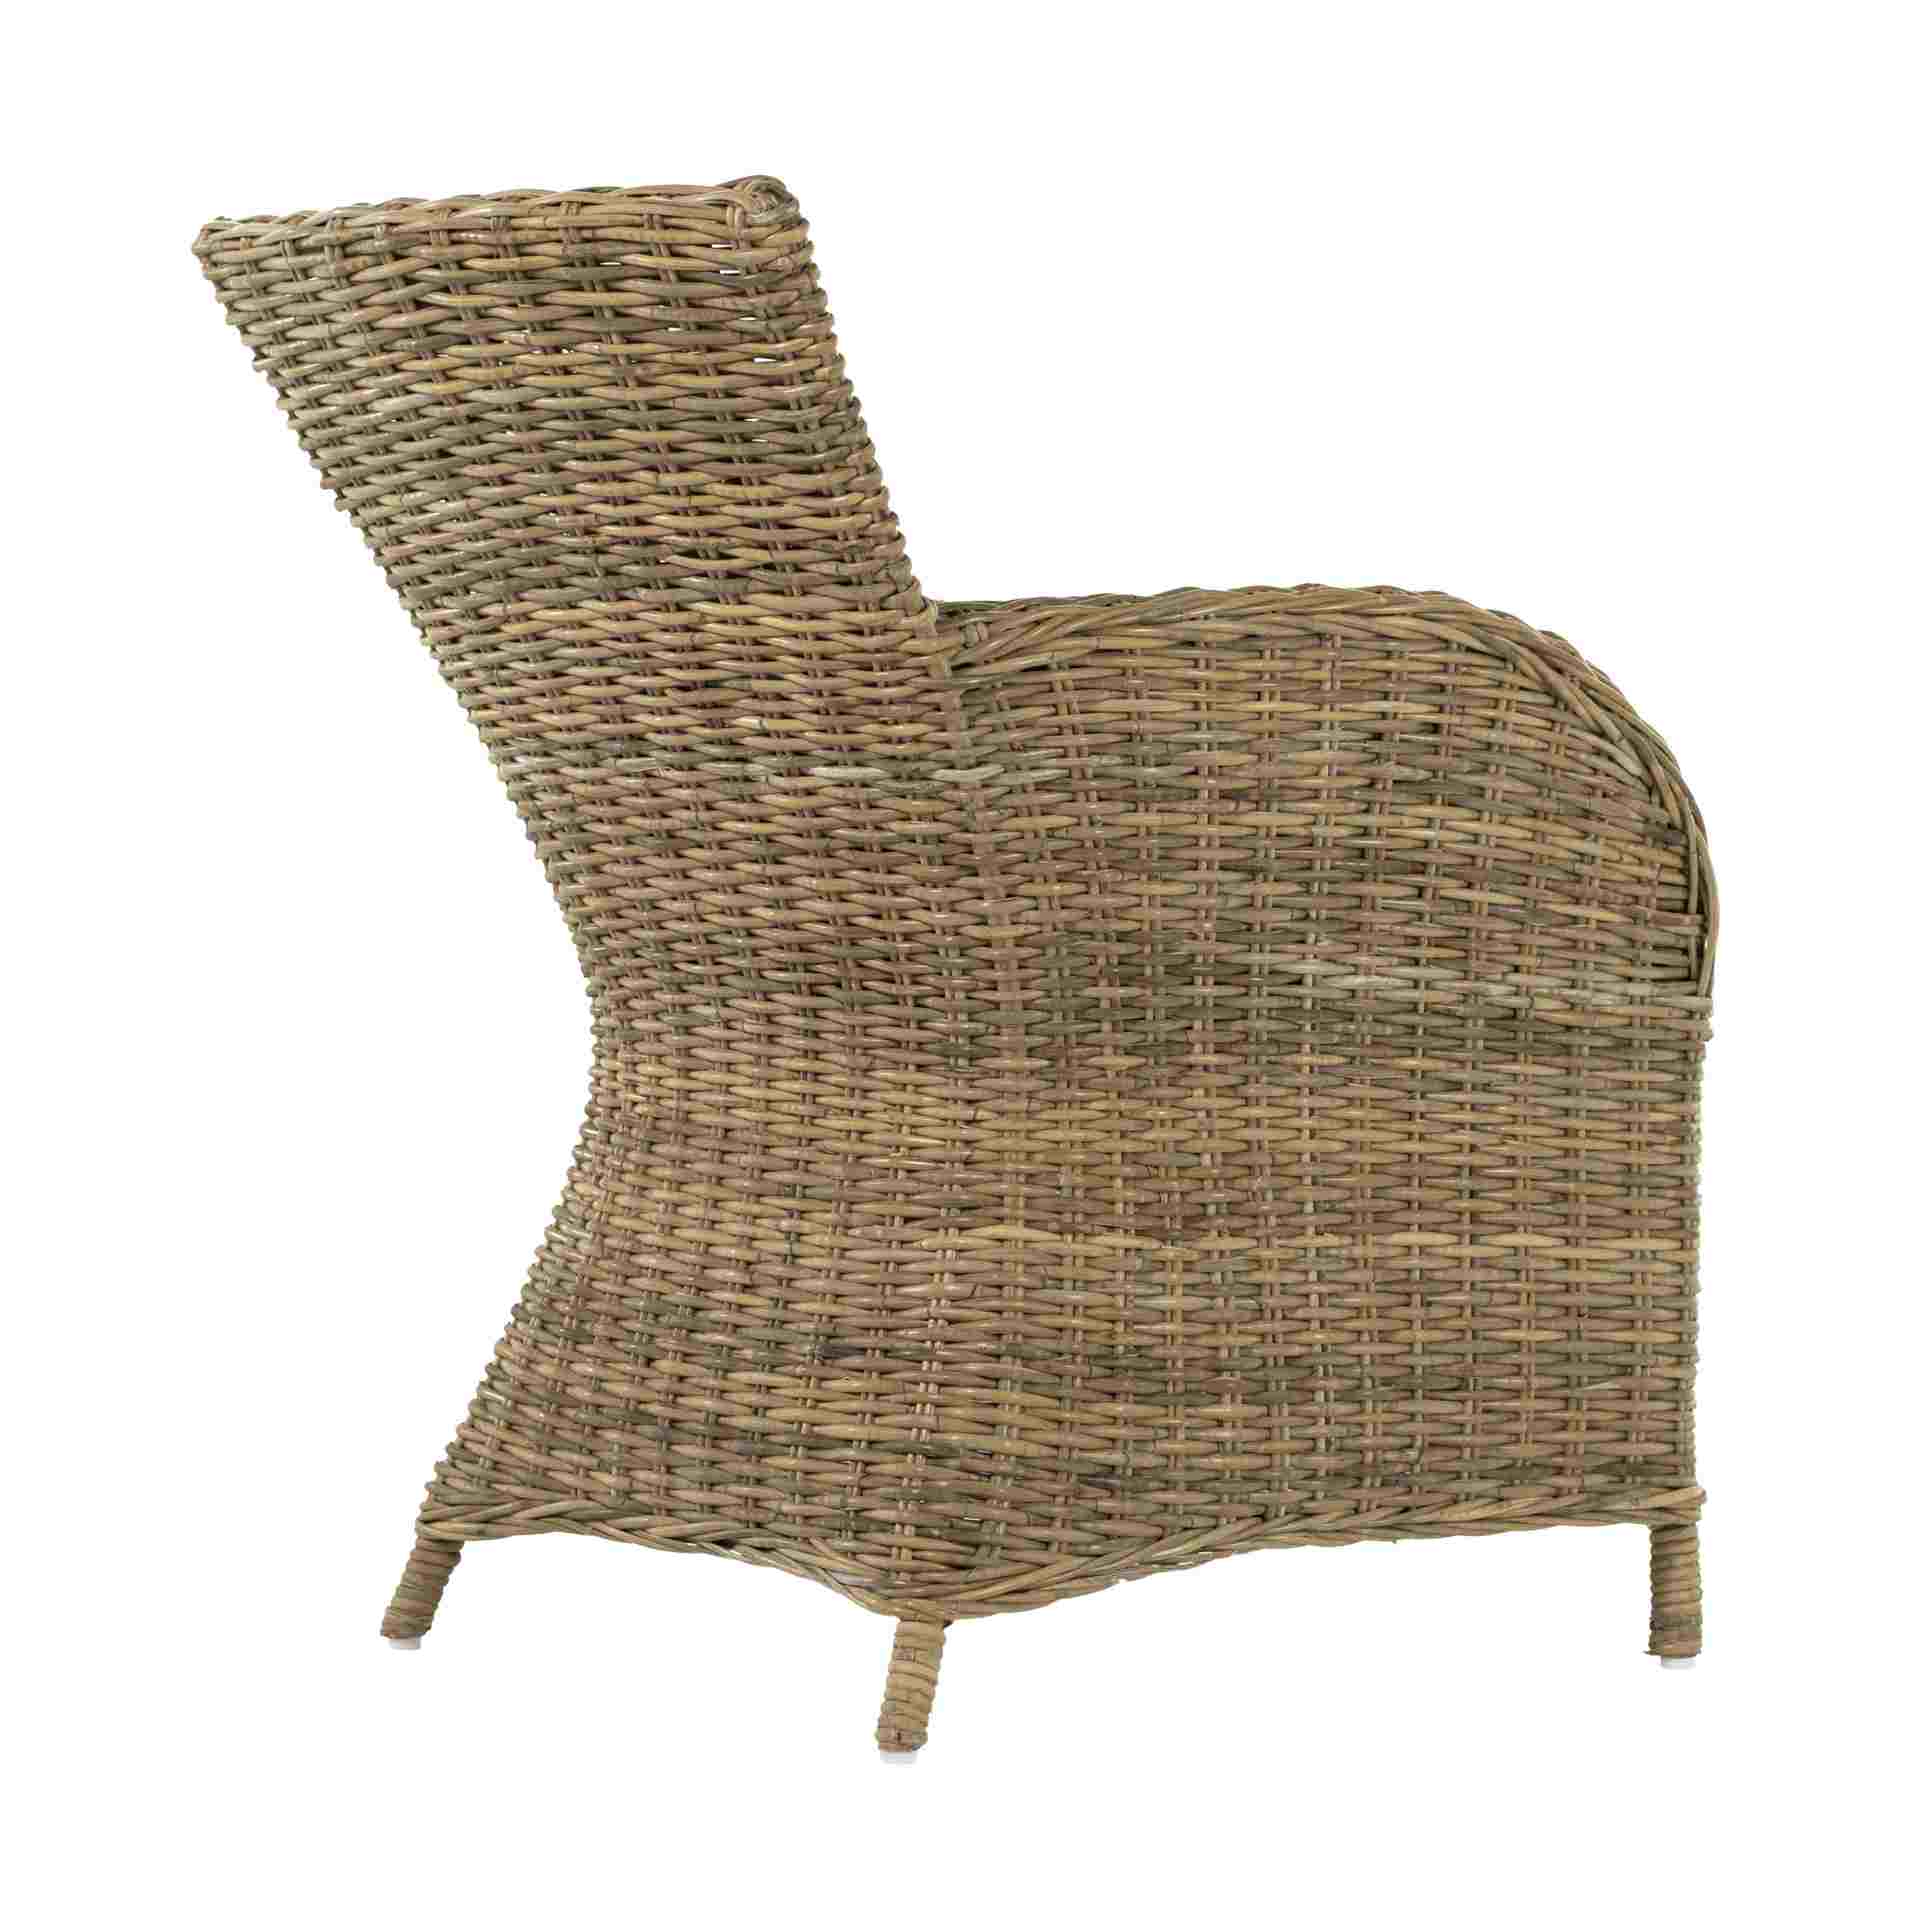 Der Esszimmerstuhl Rook überzeugt mit seinem Landhaus Stil. Gefertigt wurde er aus Rattan, welches einen natürlichen Farbton besitzt. Der Stuhl verfügt über eine Armlehne und ist im 2er-Set erhältlich. Die Sitzhöhe beträgt beträgt 43 cm.